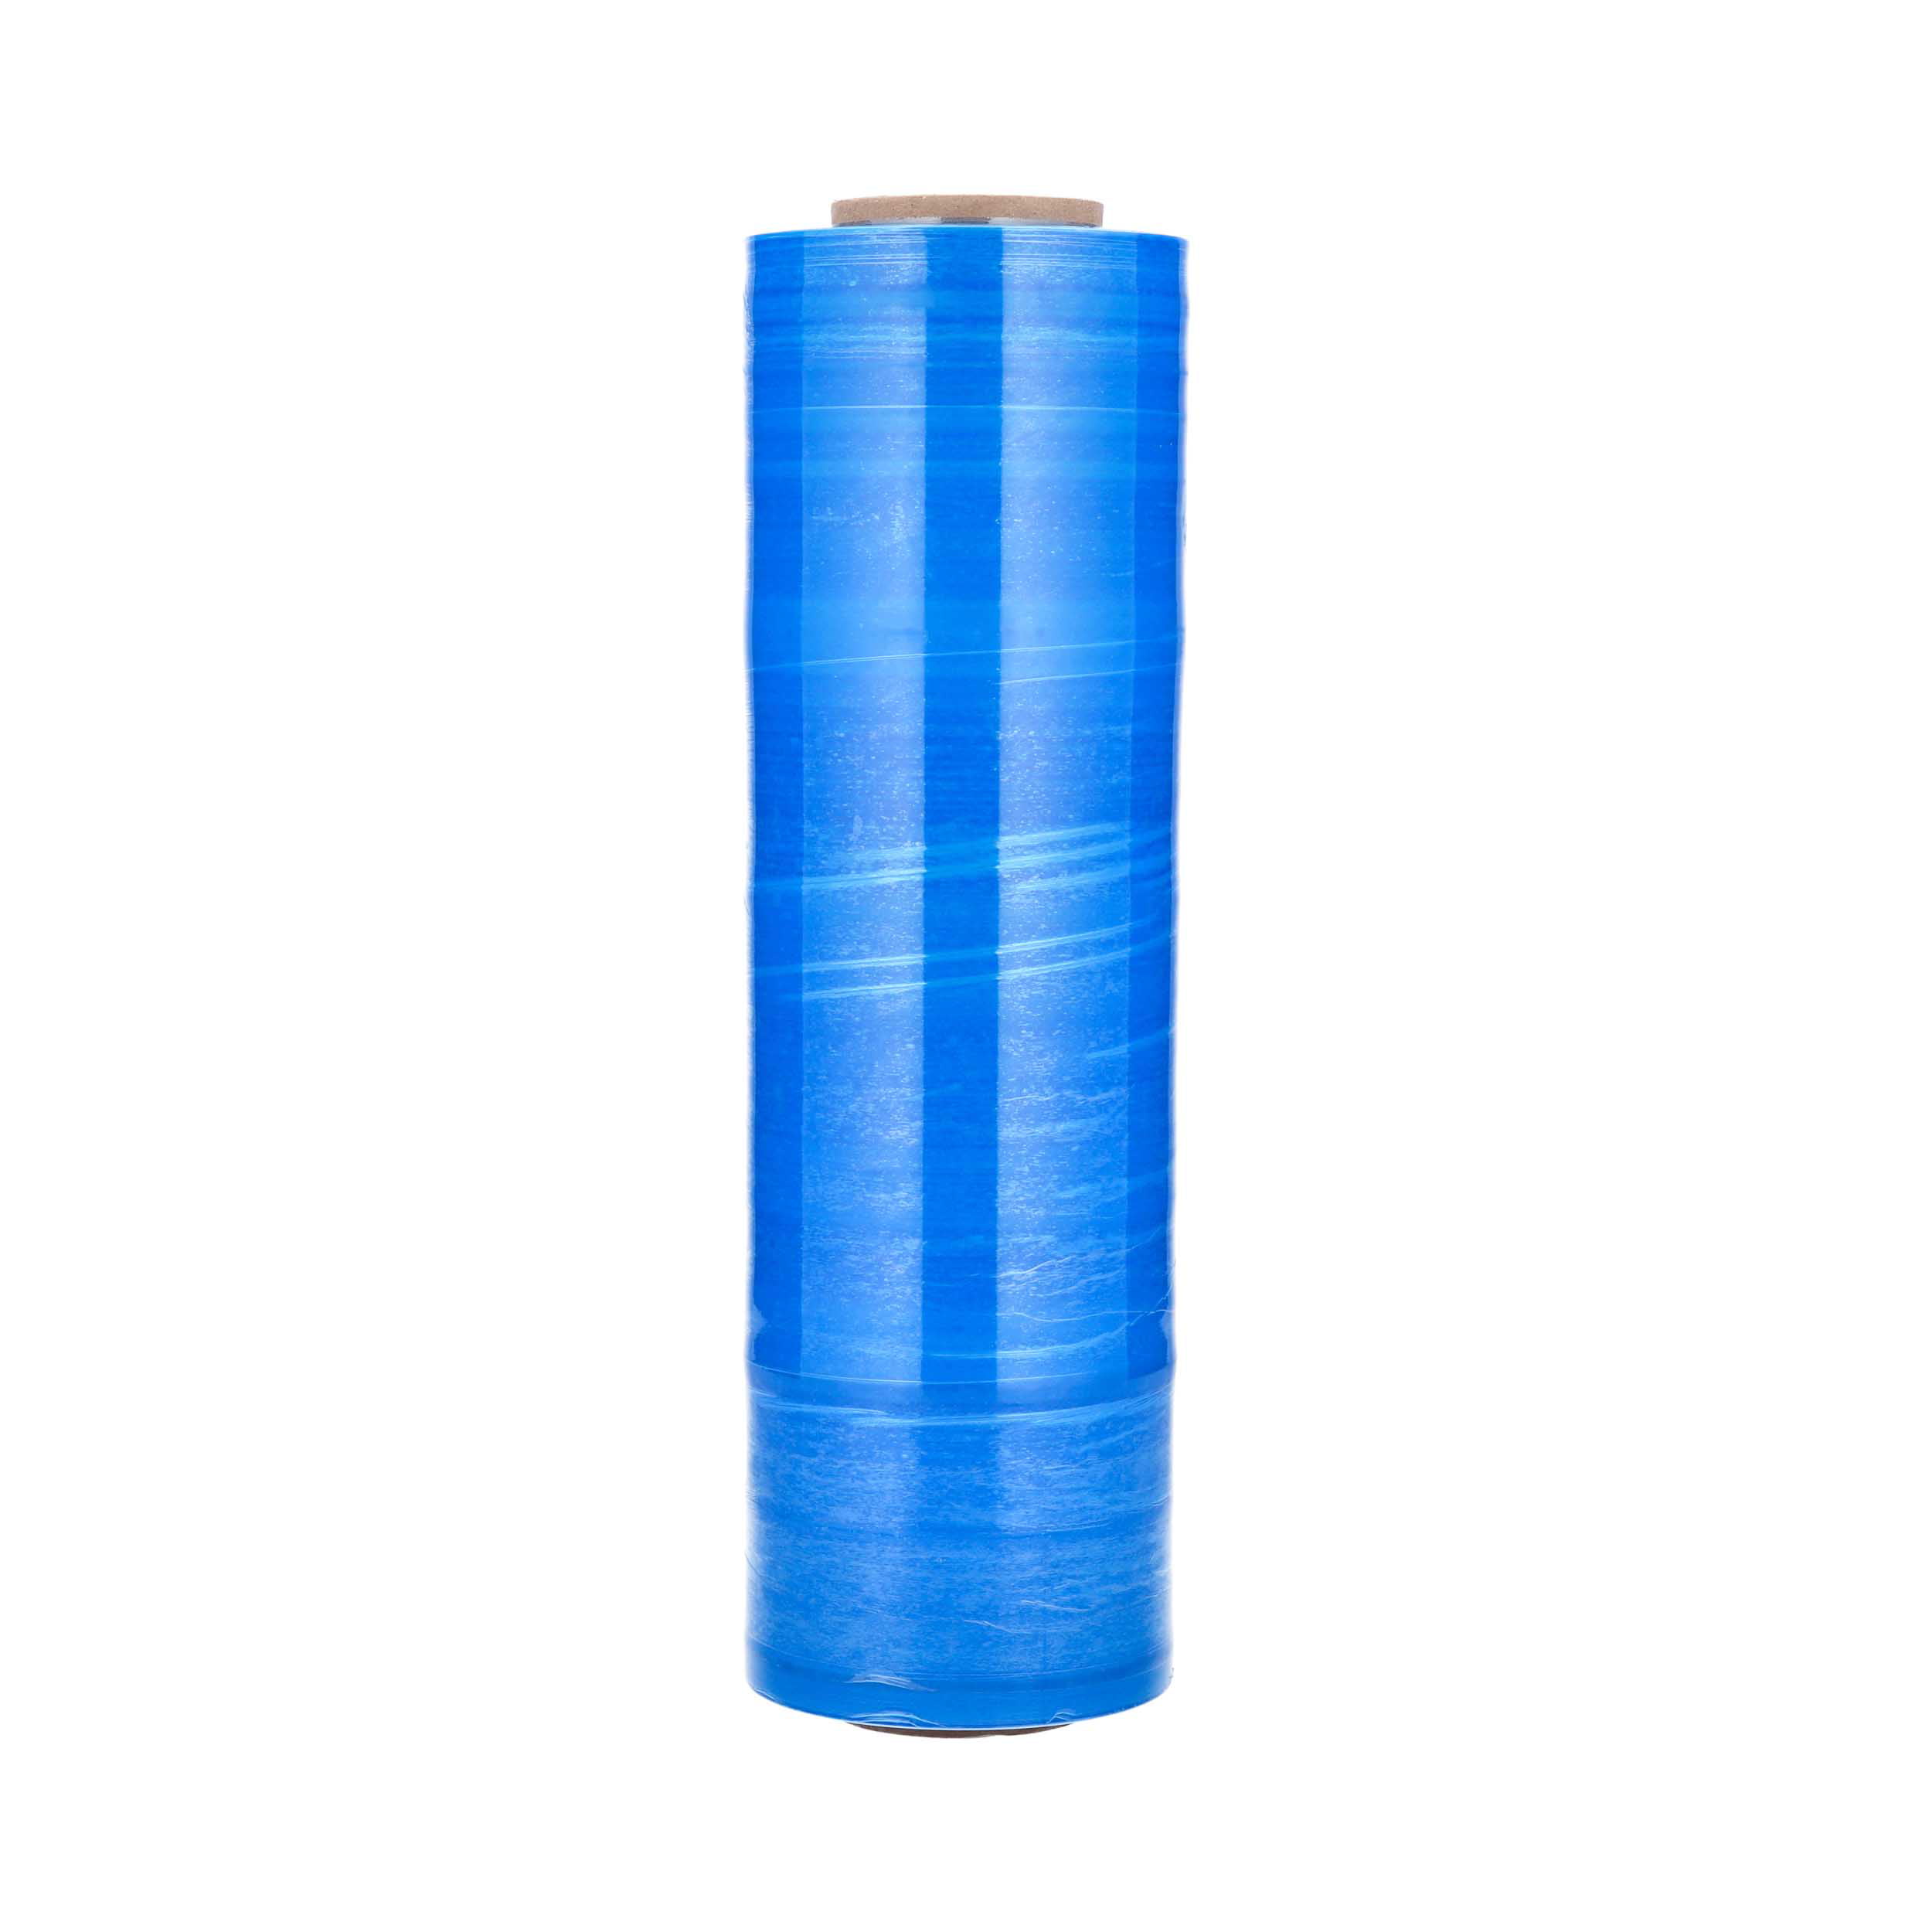 Blue Dark Color Stretch Film 15 Inch x 1500 Feet 63 Gauge Plastic Hand Wrap 256 Rolls 